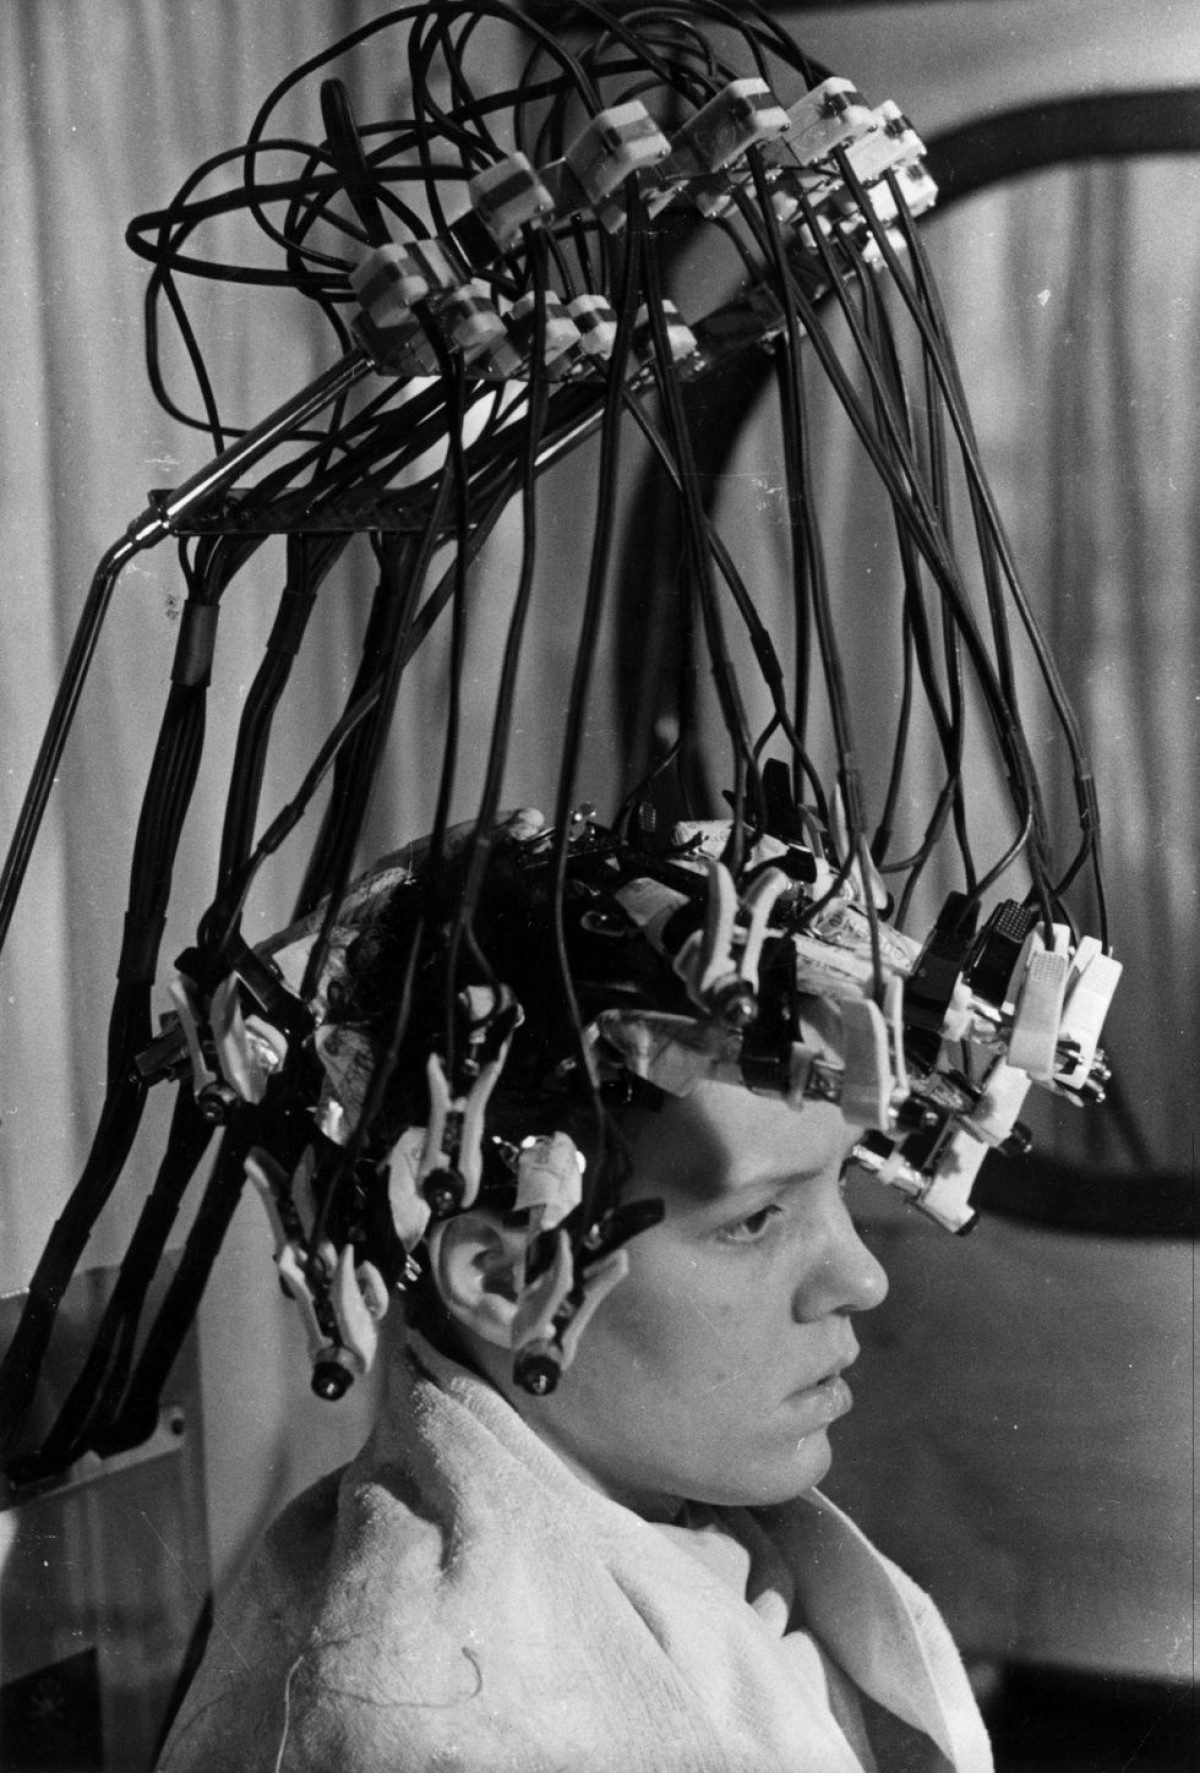 Bức ảnh này có thể giống trong một bộ phim khoa học viễn tưởng, nhưng thực chất đây là máy uốn tóc xoăn sóng tại một thẩm mỹ viện ở London (Anh) vào năm 1939.